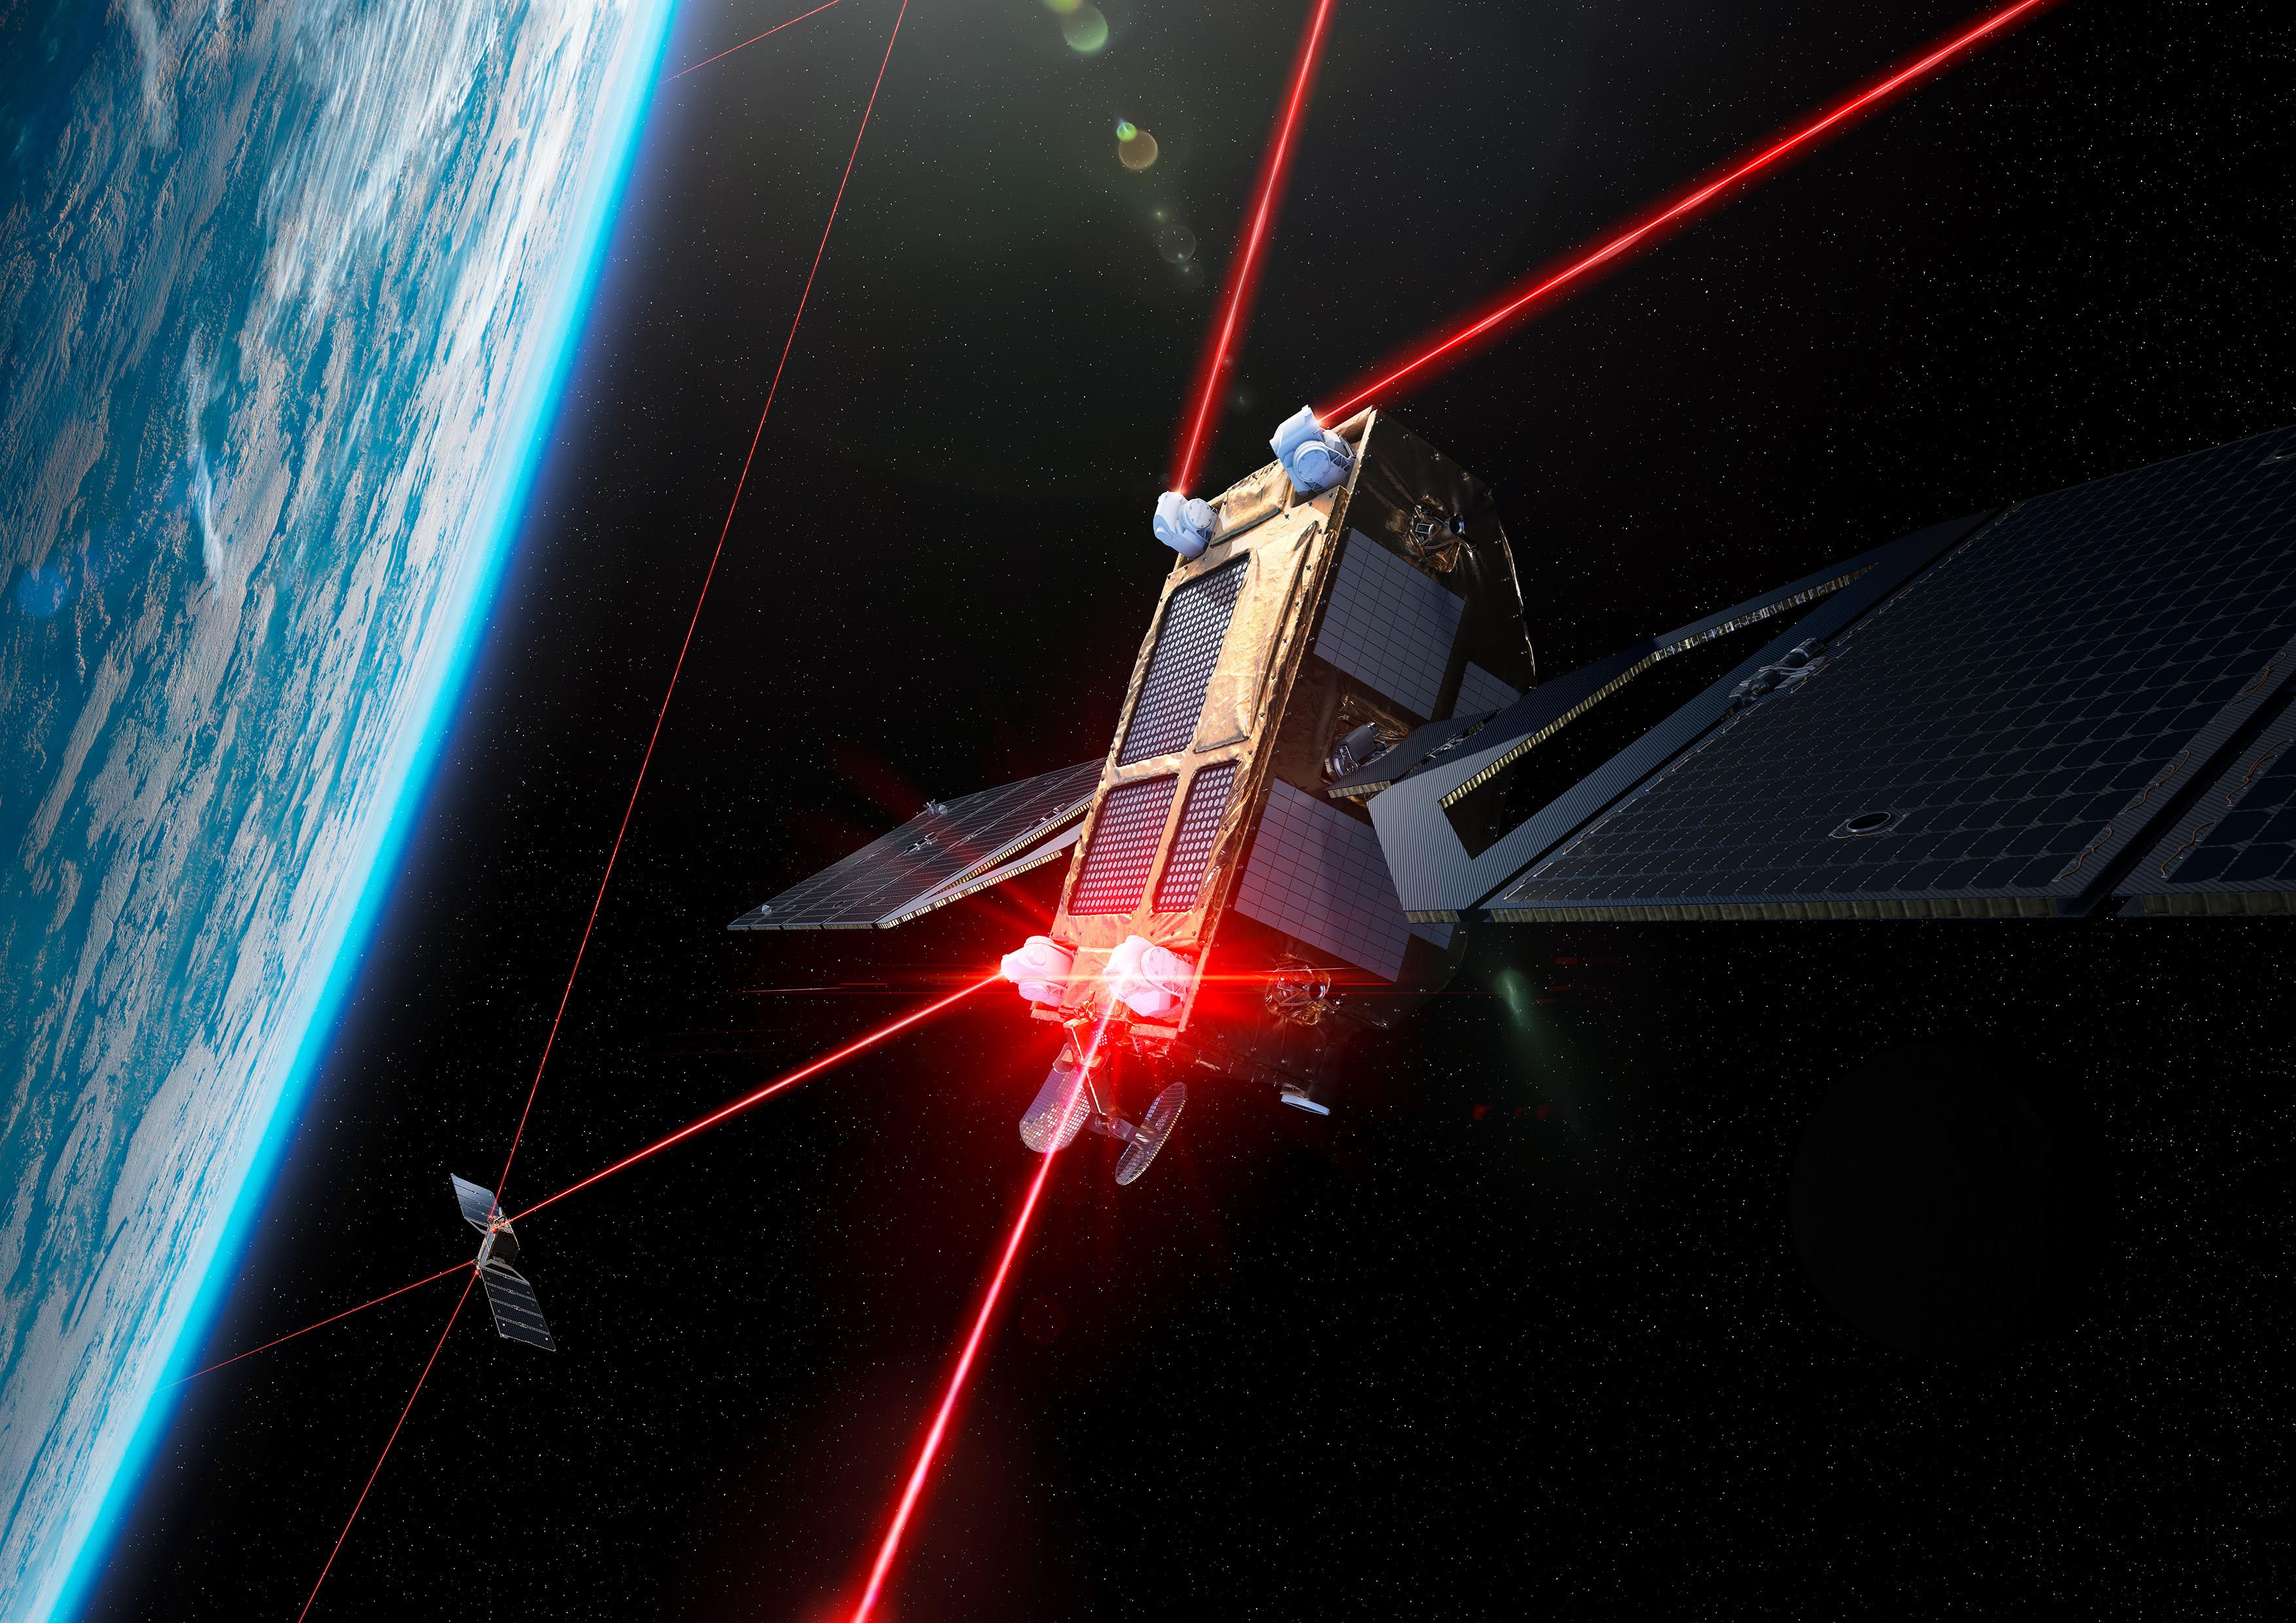 Mehrere Satelliten im All, die über rote Strahlen miteinander kommunizieren. Im Hintergrund die Erde.